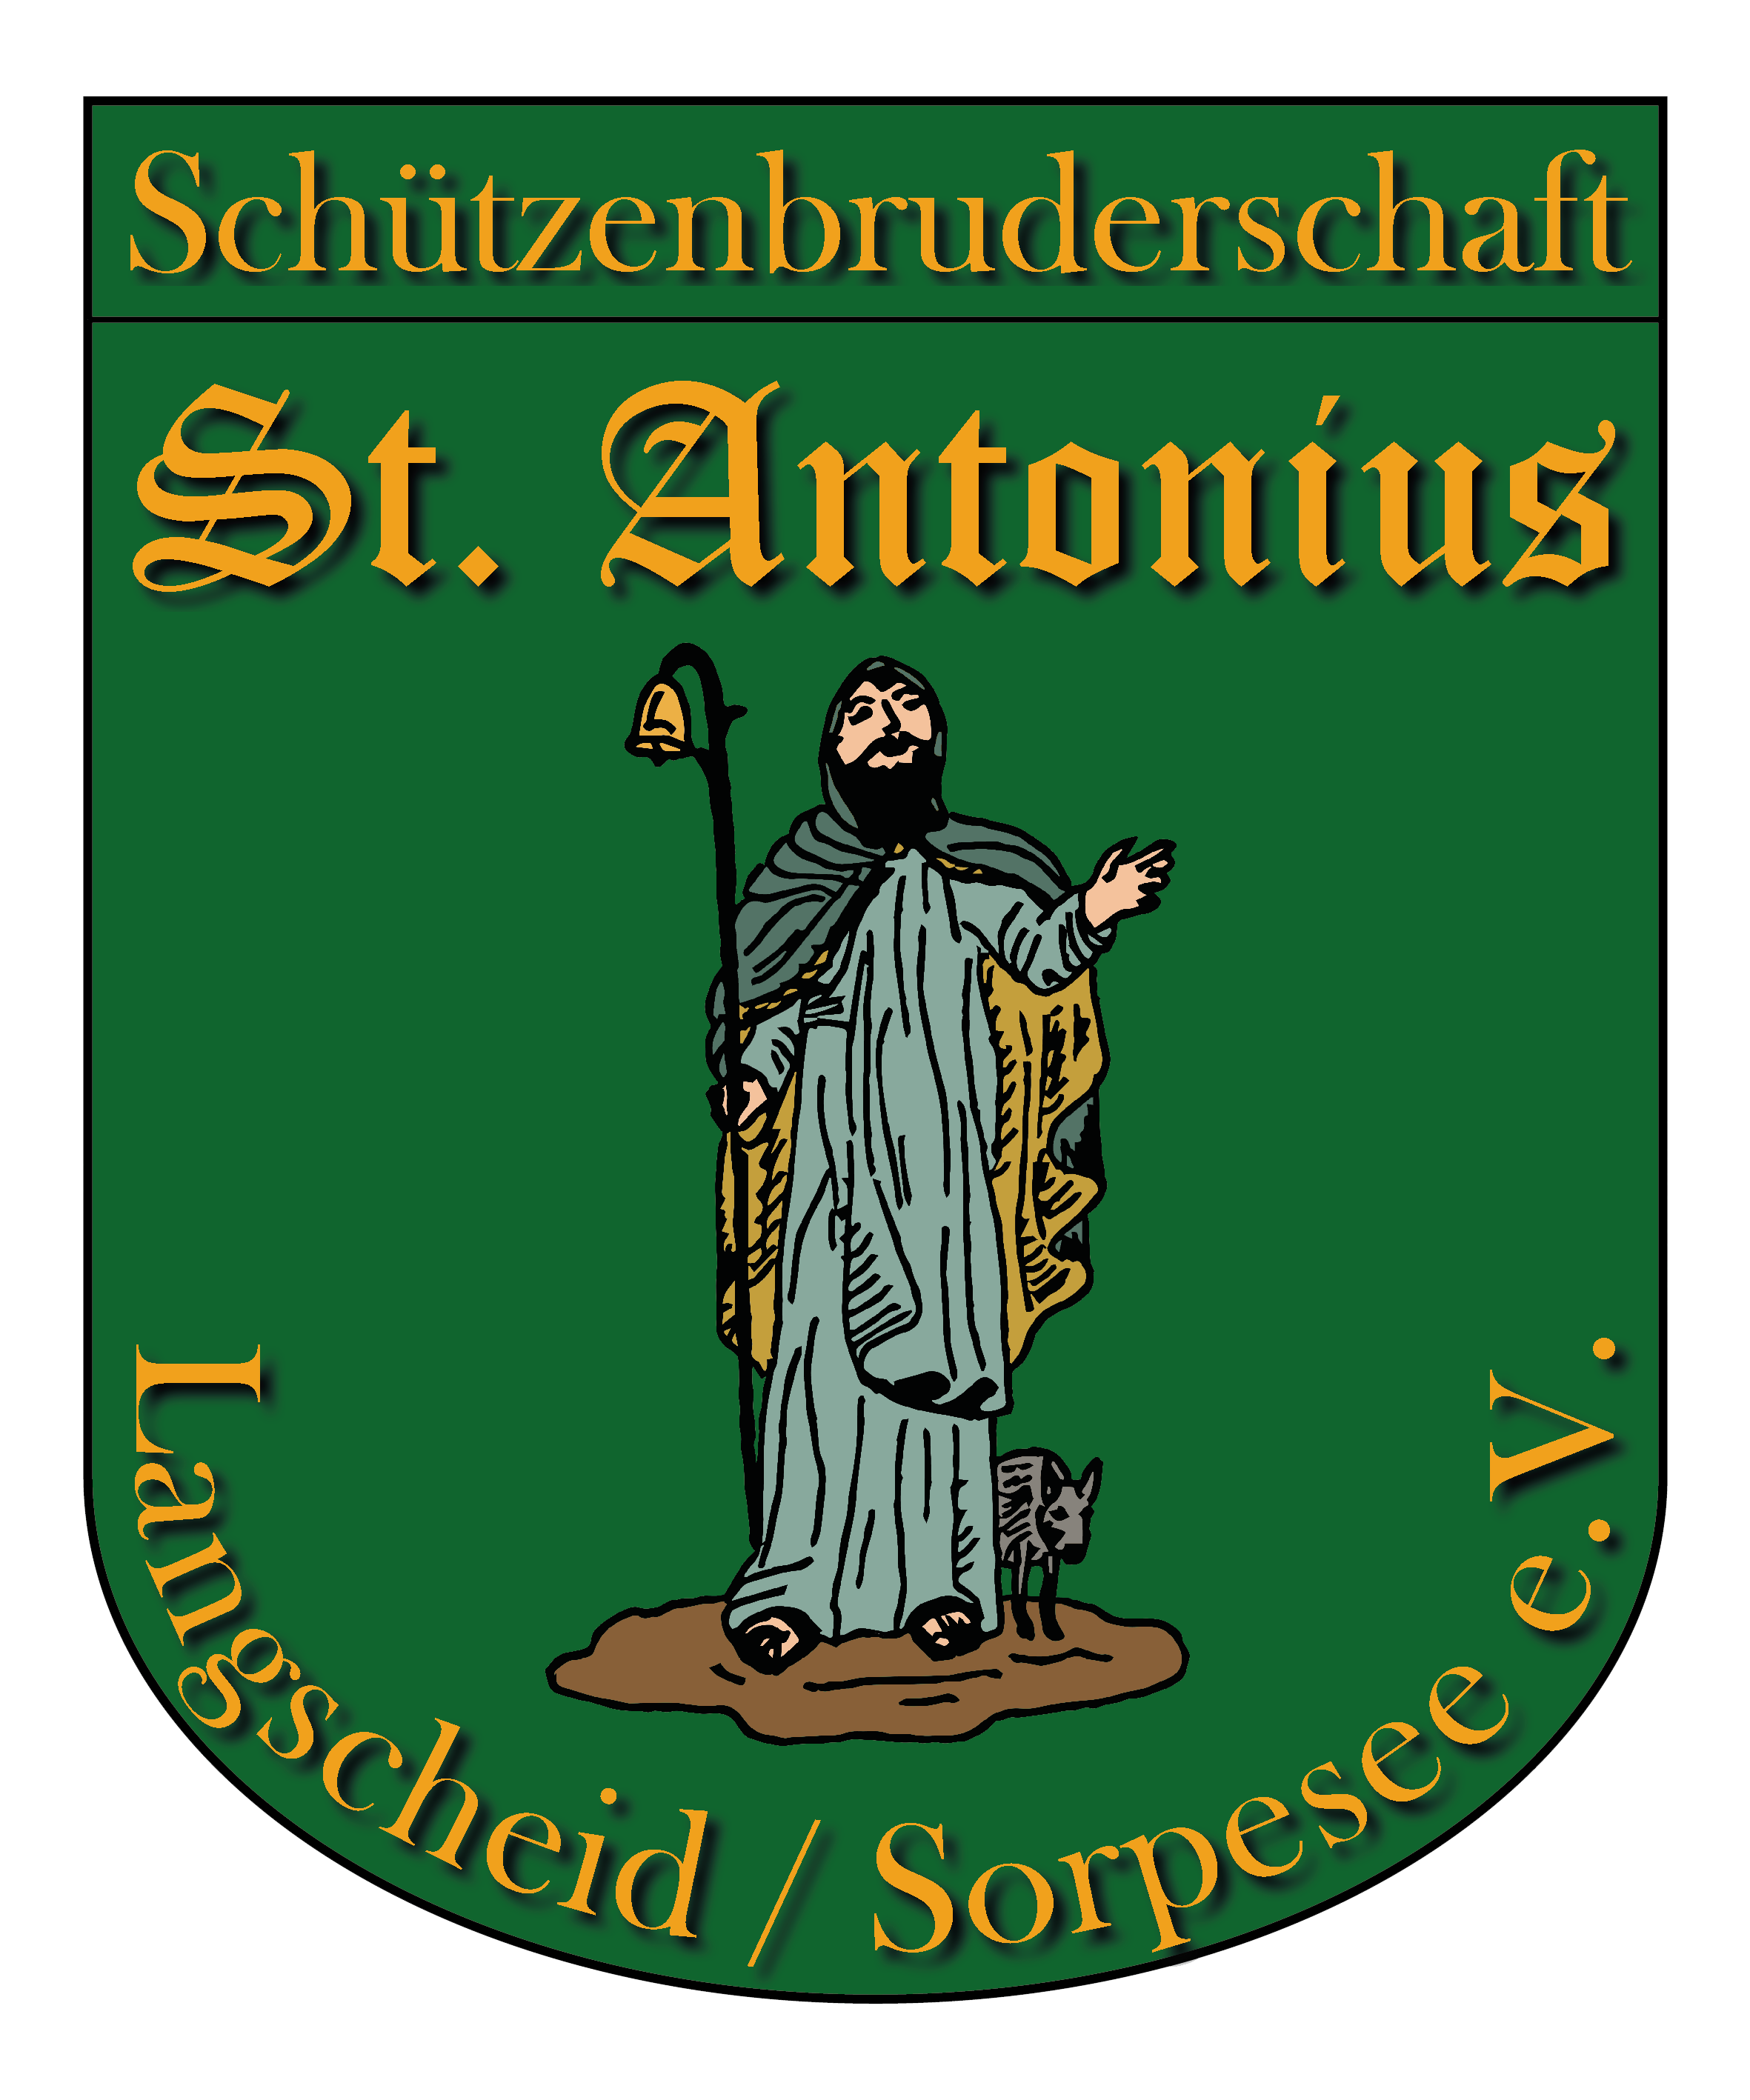 Schützenbruderschaft St. Antonius Langscheid/Sorpesee e.V.